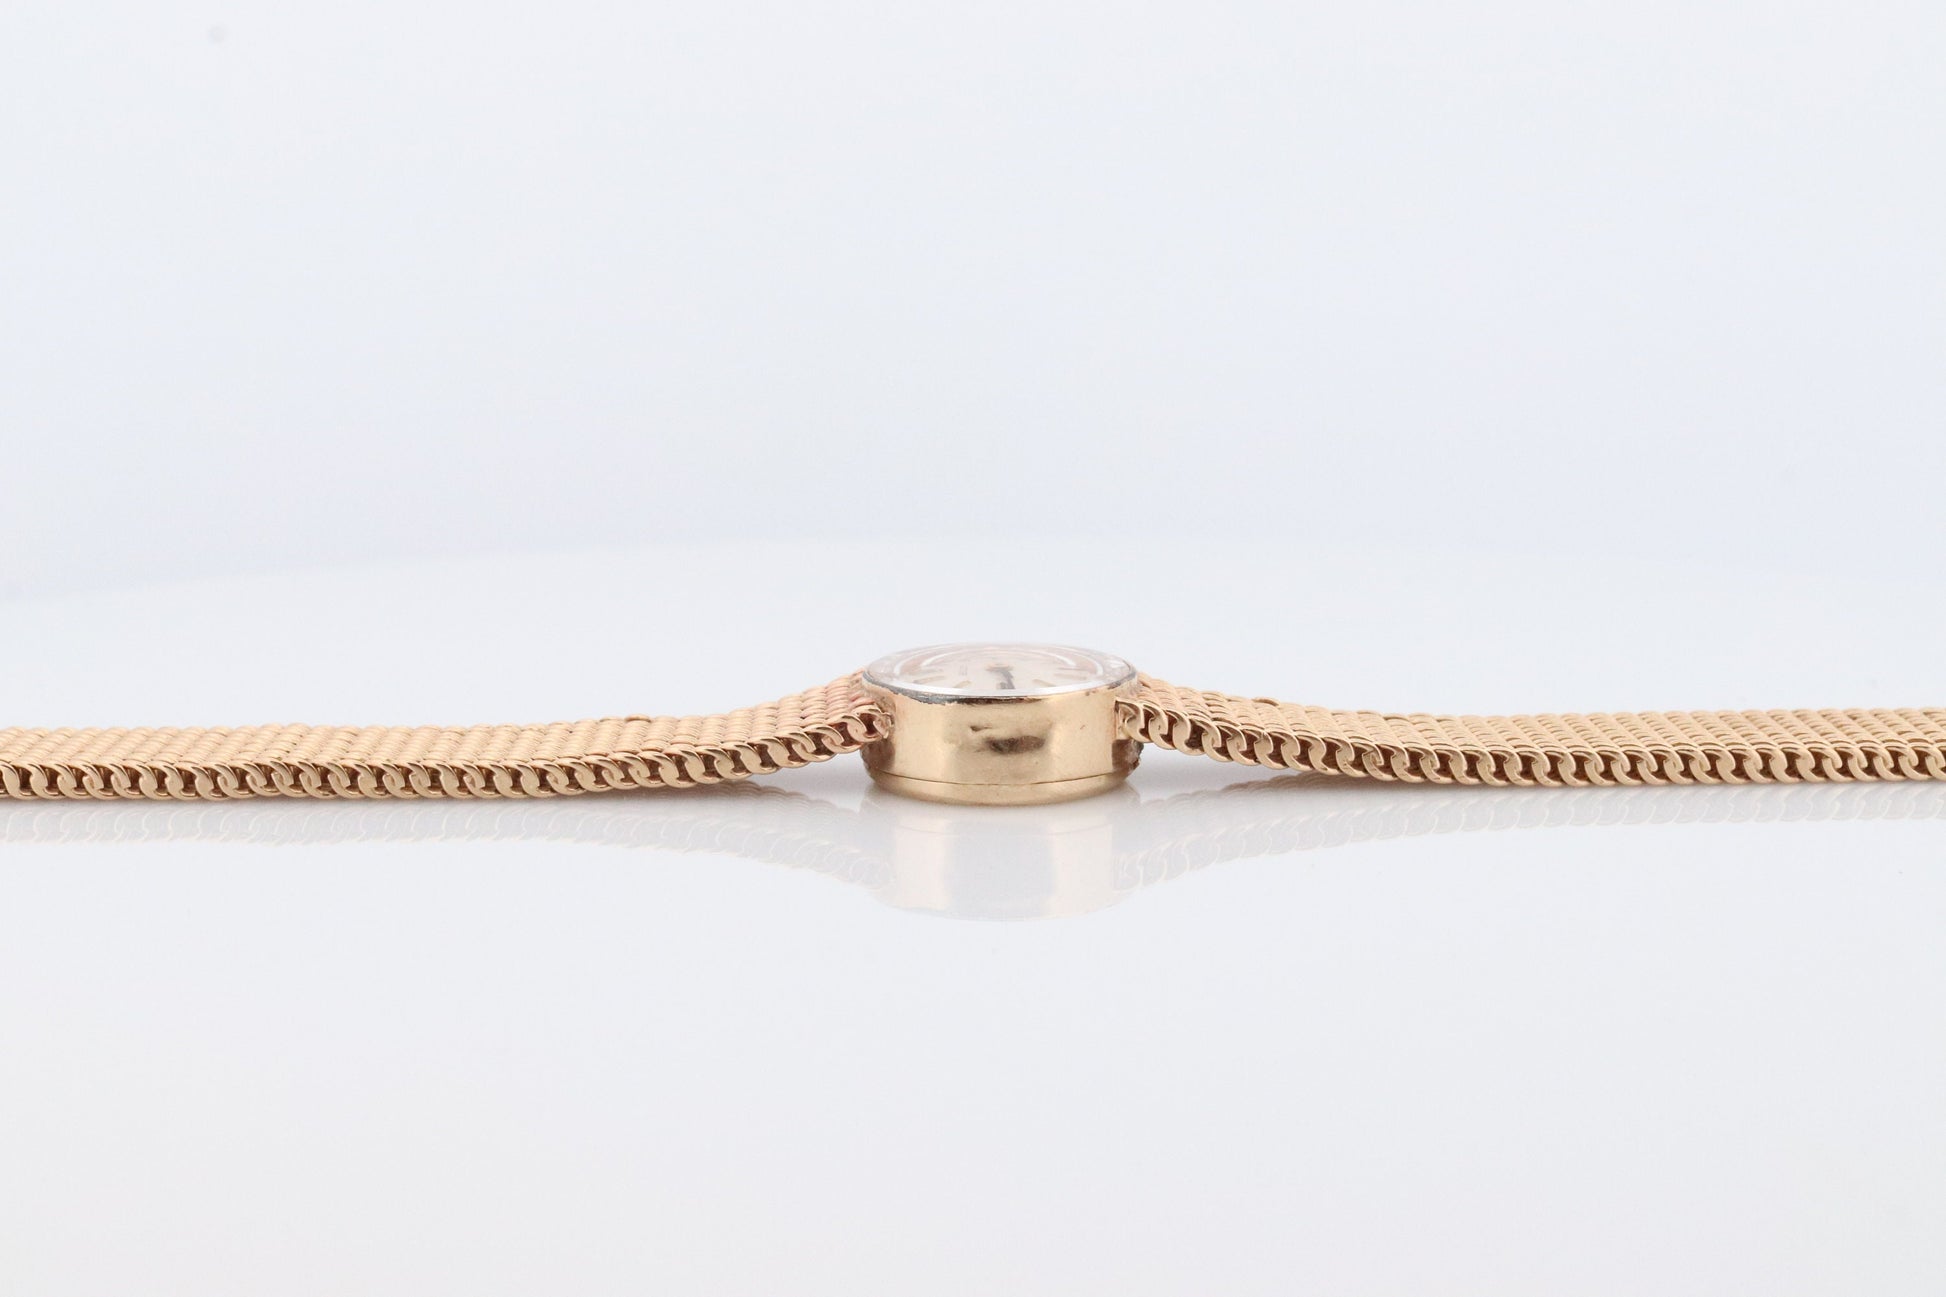 14k Rolex Women's Cocktail Watch. 14k Orchid Rolex with Yellows Gold Bracelet. 1400 Ladies Rolex Watch. Full Gold Rolex round wristwatch.